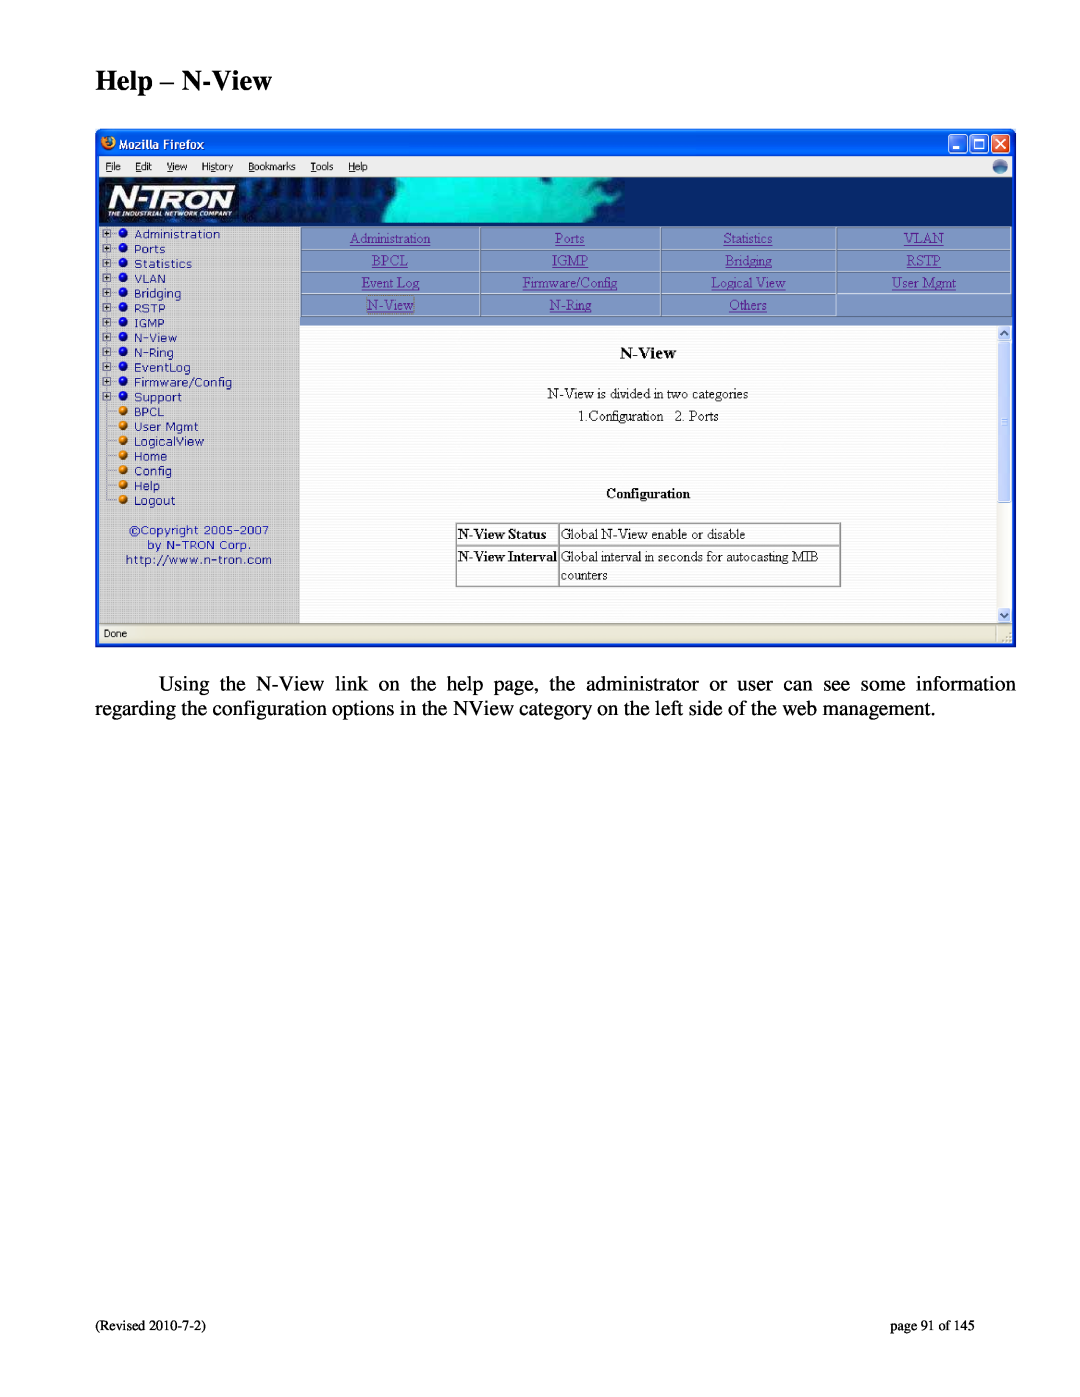 N-Tron 9000 user manual Help - N-View, page 91 of 